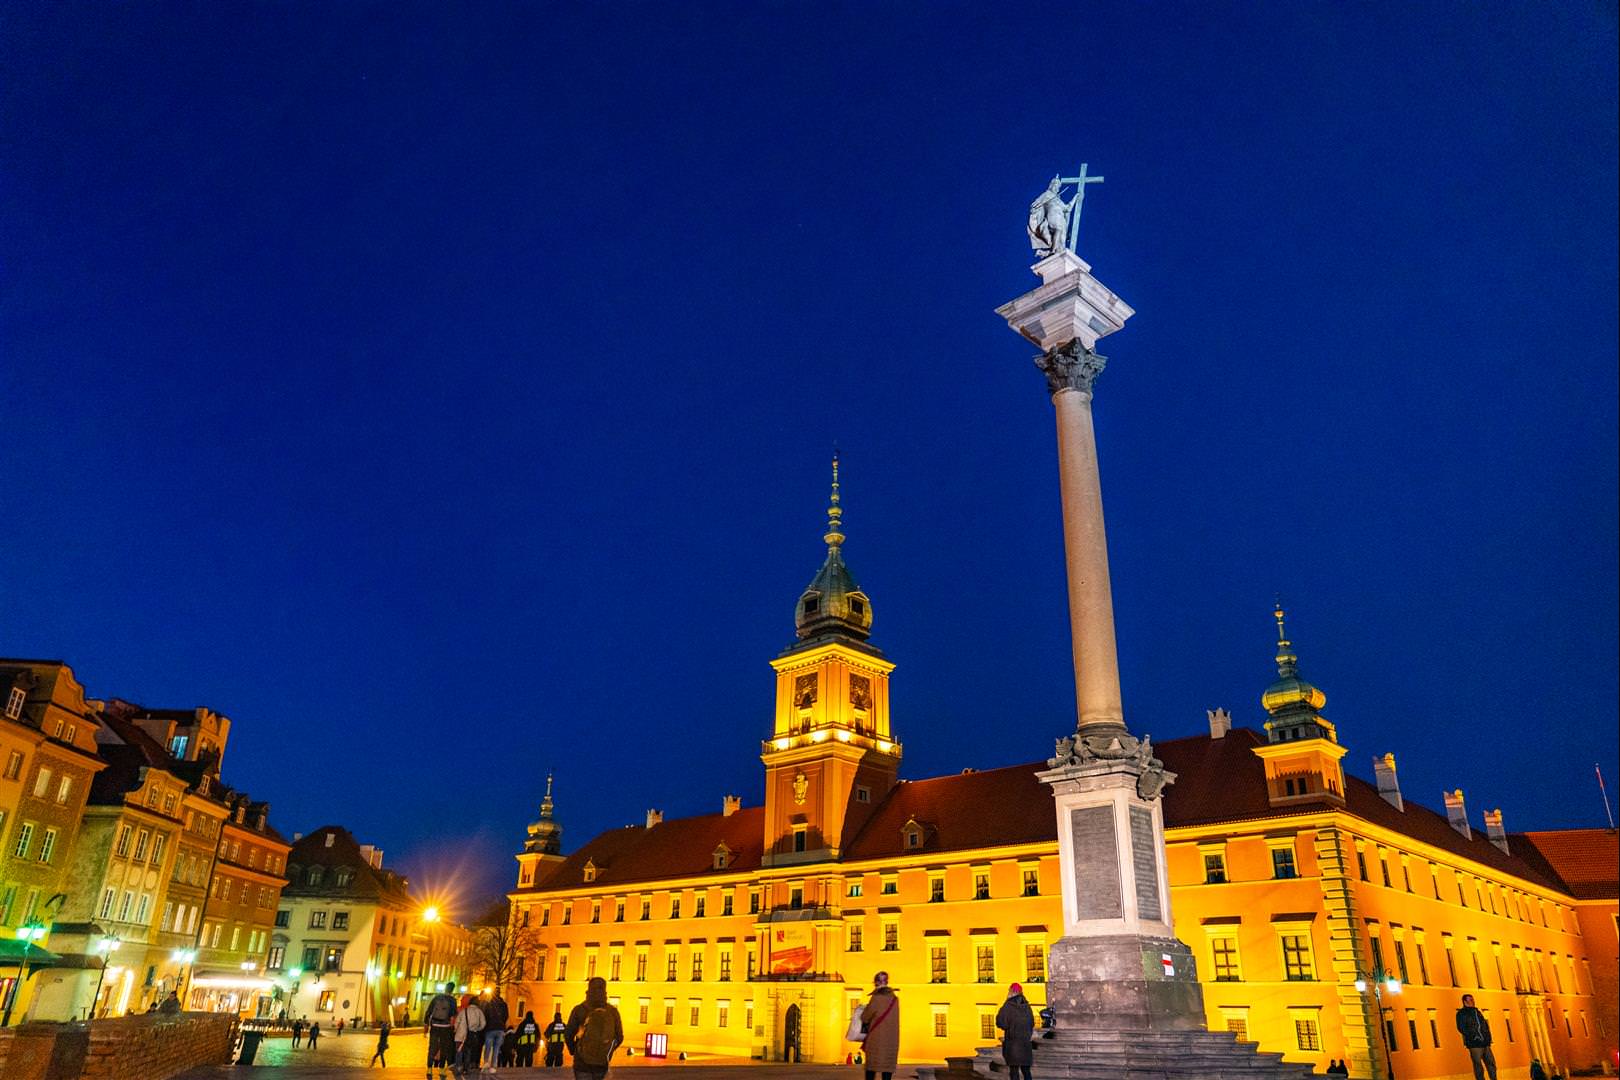 [波蘭/華沙] 華沙景點 整理 - 華沙科學宮、聖十字教堂、蕭邦故居、皇家城堡、老城廣場